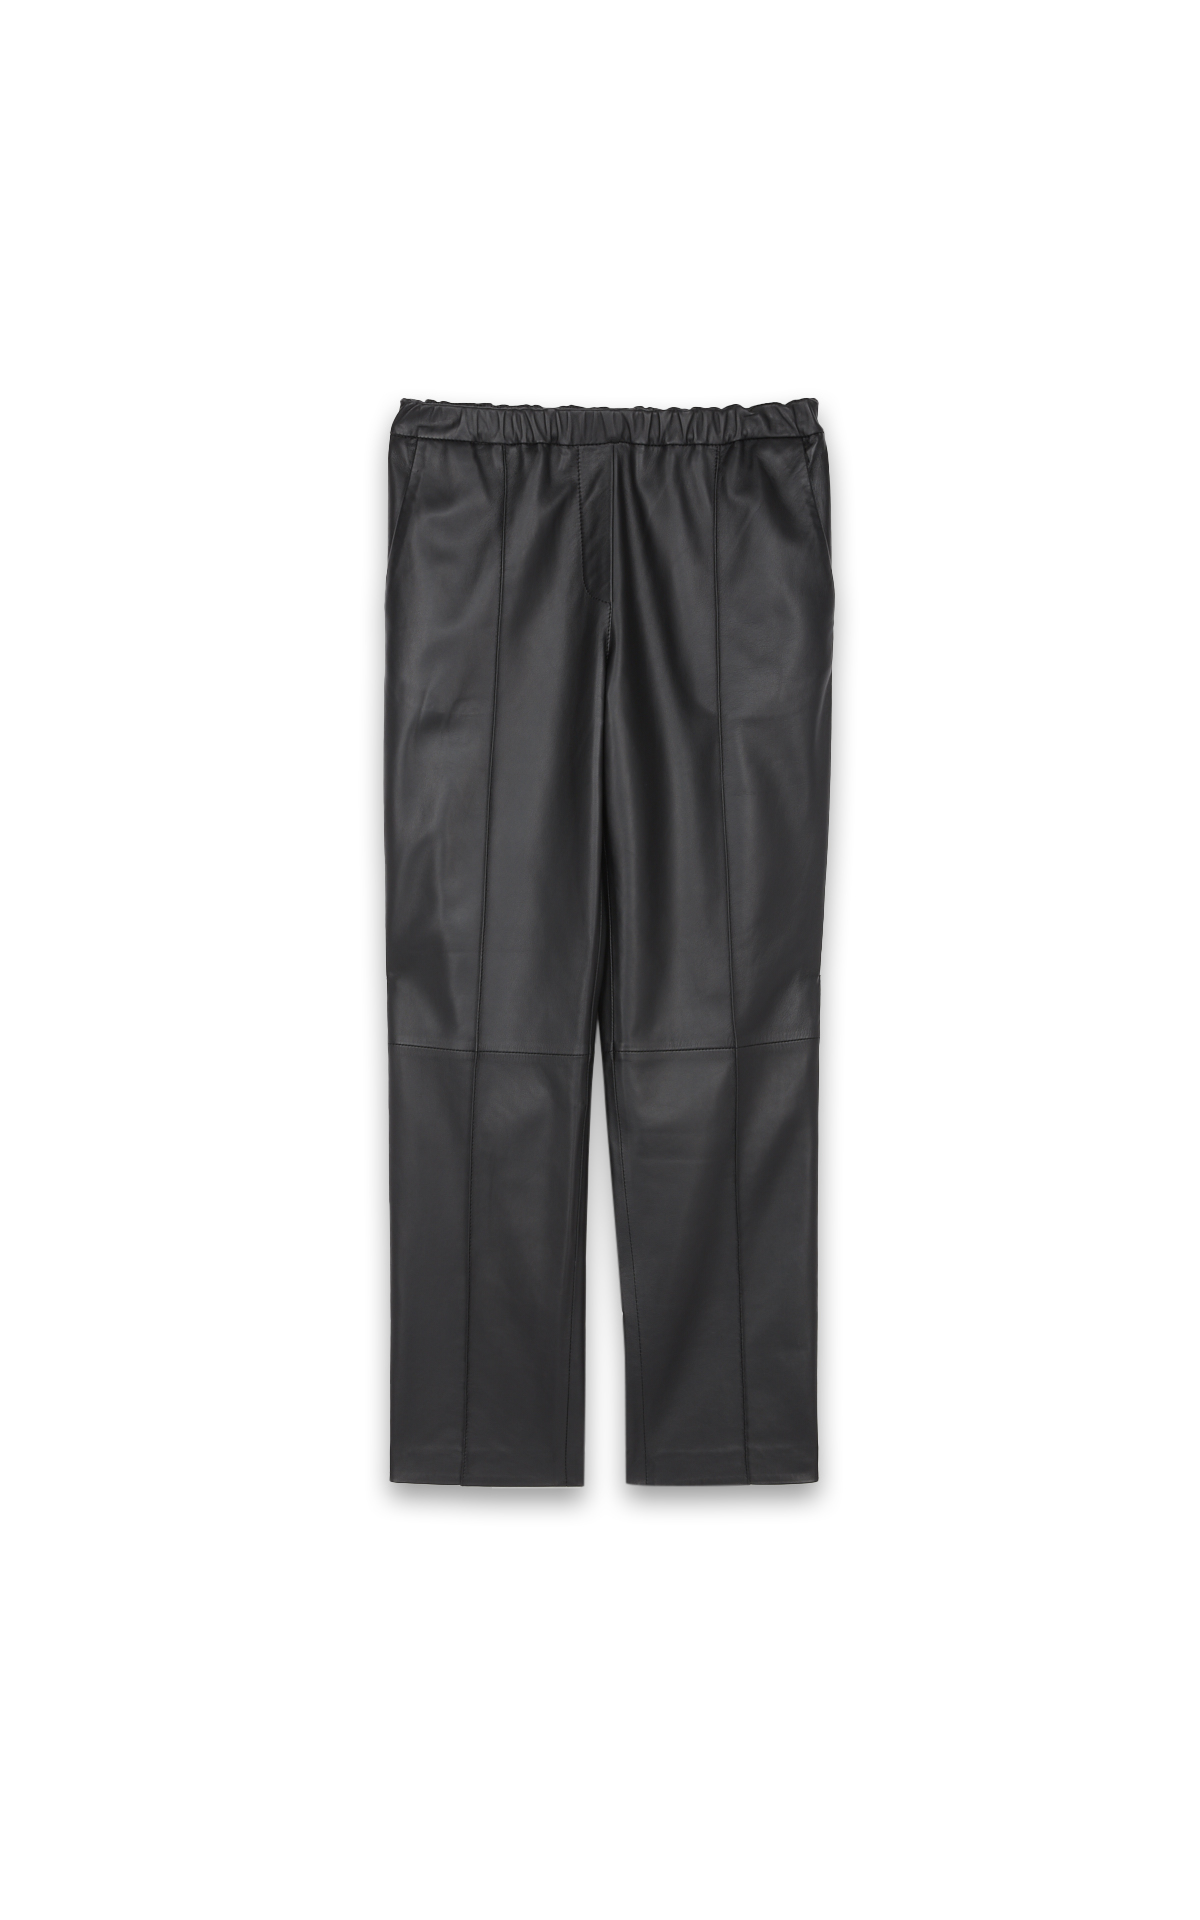 Pantalon en cuir noir coupe droite*